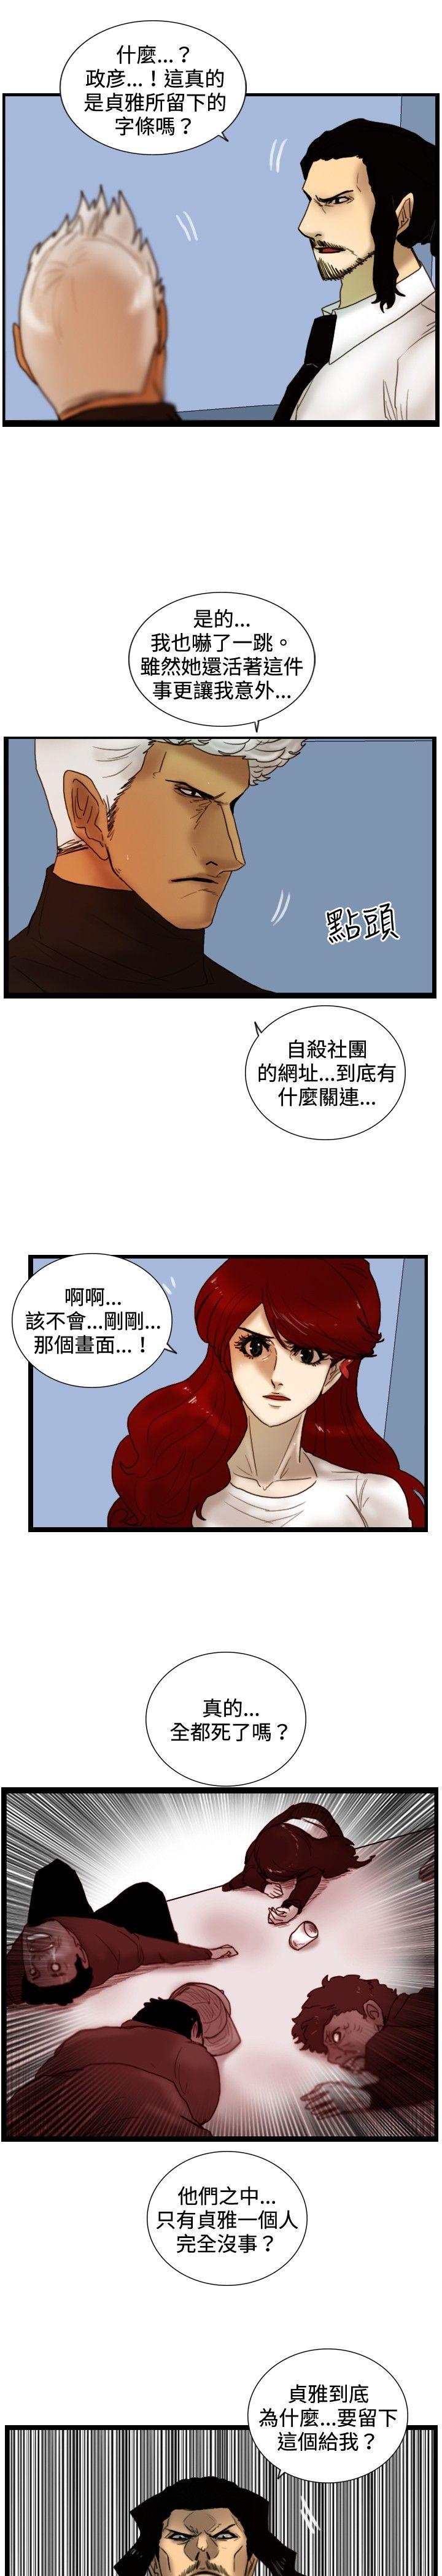 韩国污漫画 覺醒(完結) 第27话自杀社团 7